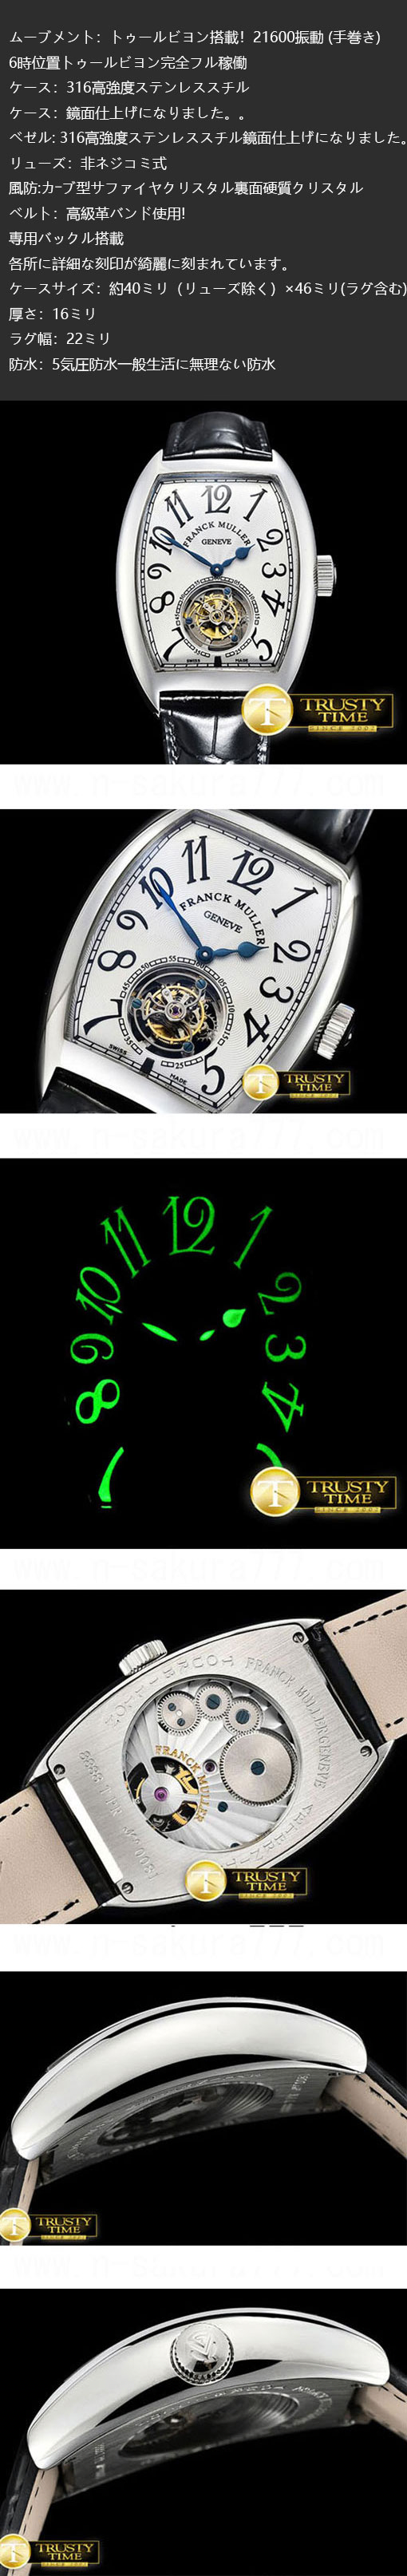 スーパーコピー時計 フランクミュラー エテルニタス トゥールビヨン搭載 (手巻き)